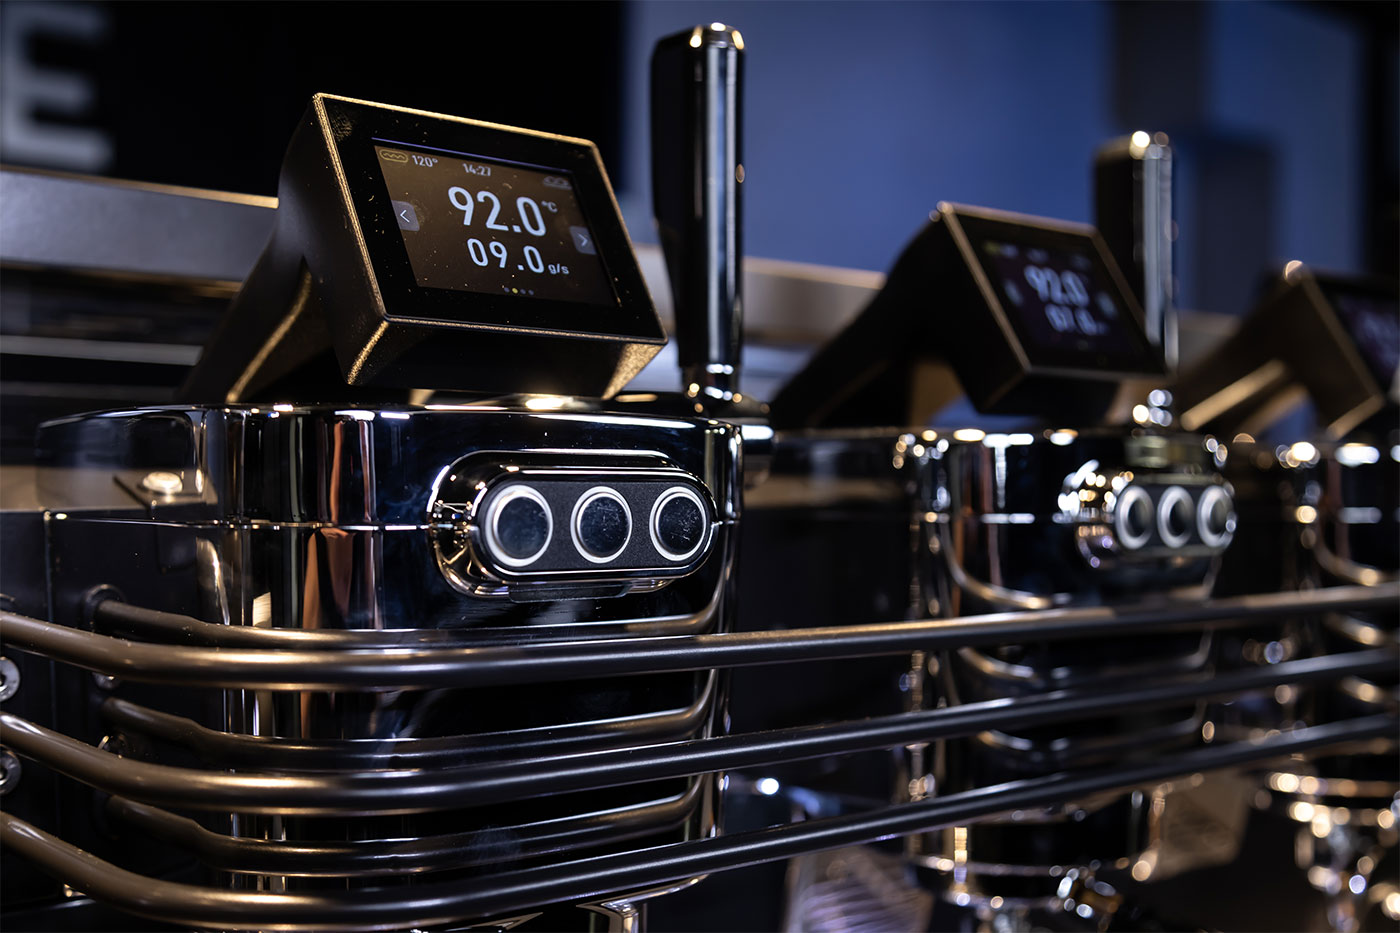 Zero barista 1 - Máquinas de espresso profesionales